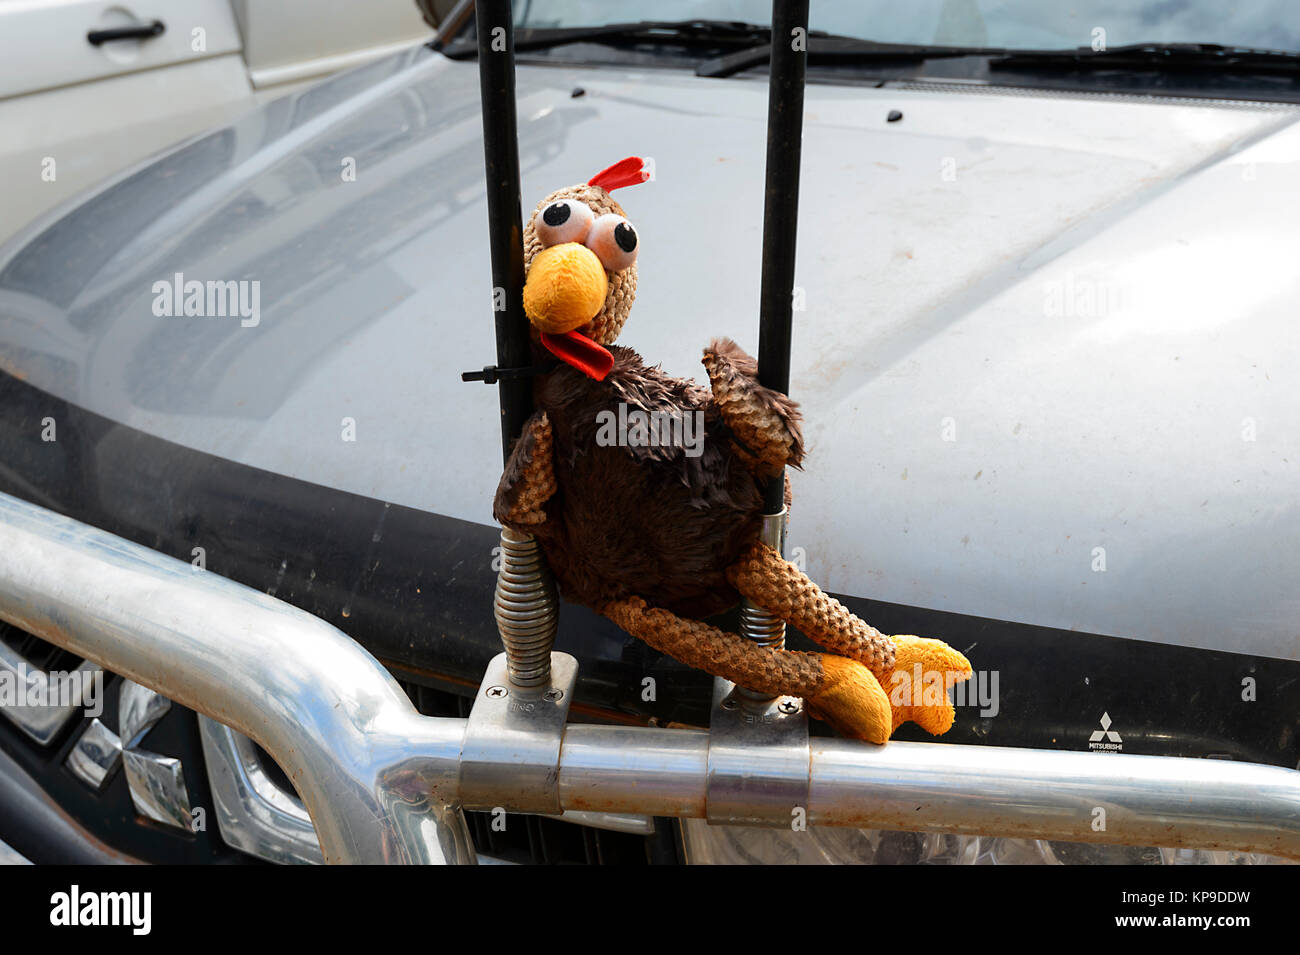 Un jouet de poulet a été placé sur une voiture bonnet, Australie Banque D'Images